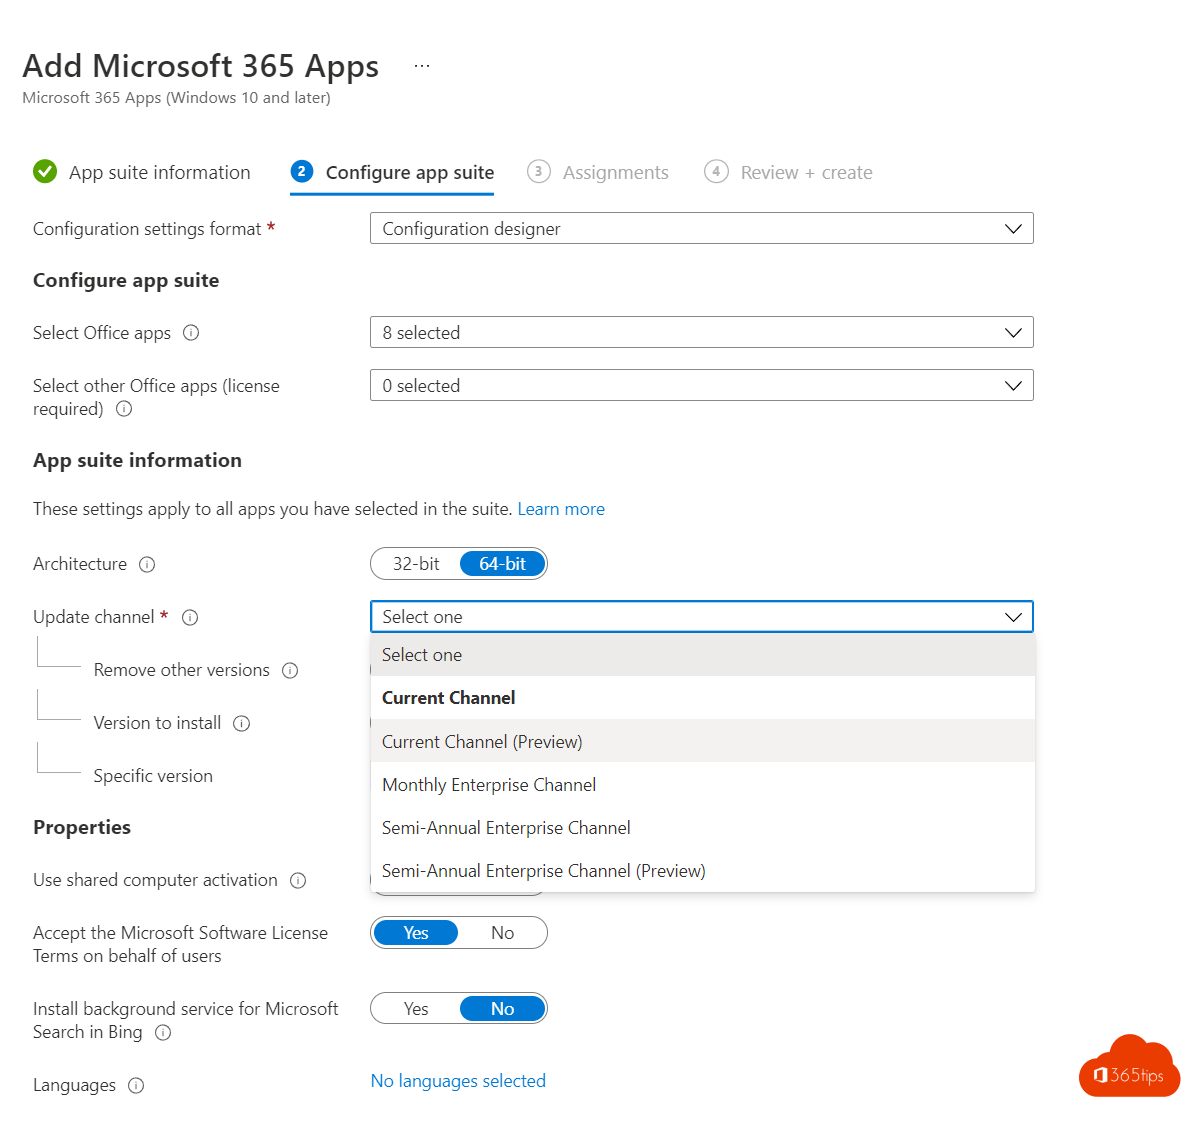 Déploiement des applications Microsoft 365 avec Microsoft Intune en 8 étapes